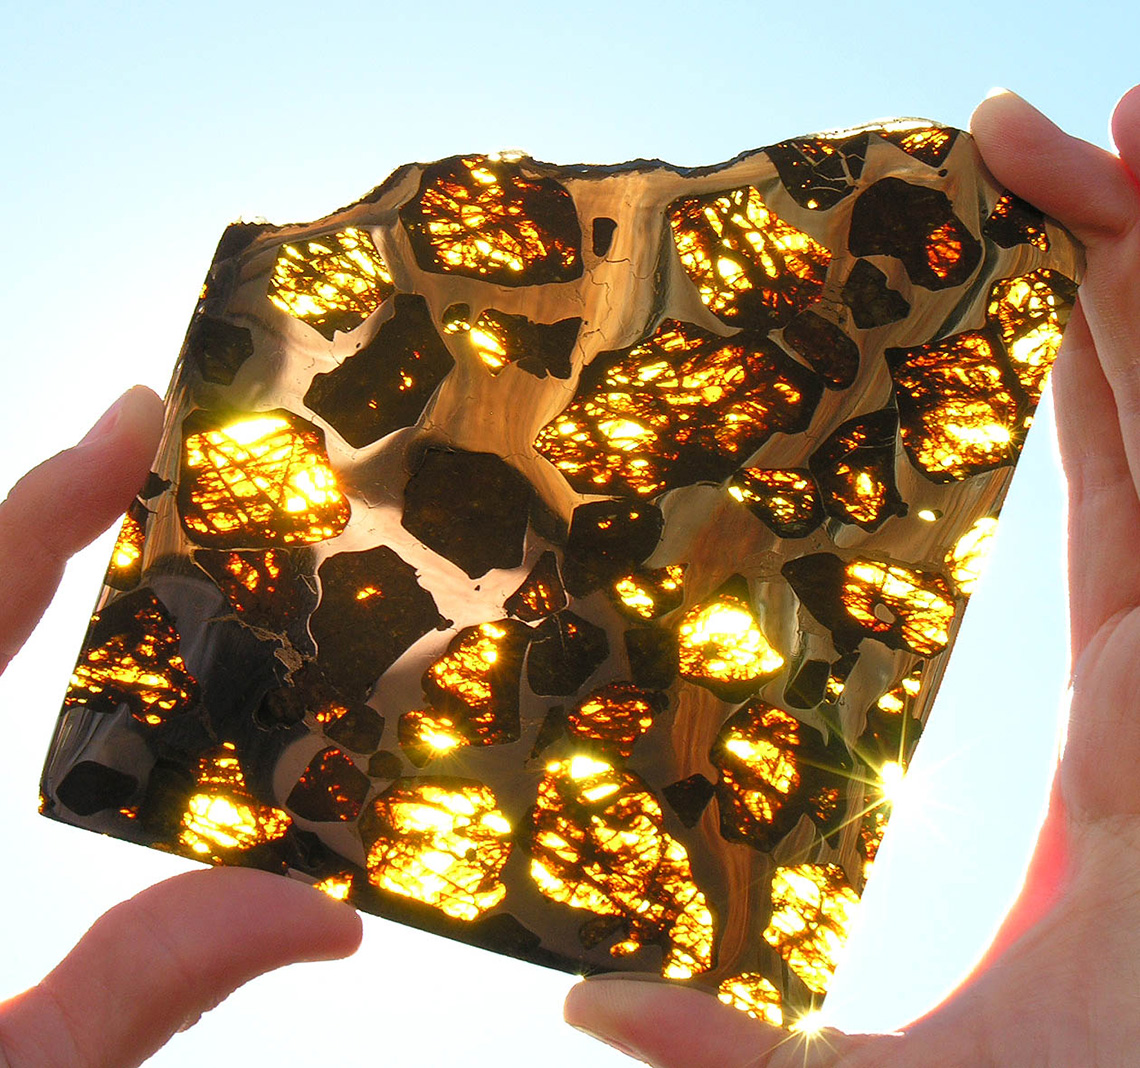 Фукан содержит множество прозрачных кристаллов оливина, чья поверхность обладает большой степенью преломления света, что делает этого «космического скитальца» самым выдающимся и уникальным представителем упавших на Землю метеоритов.